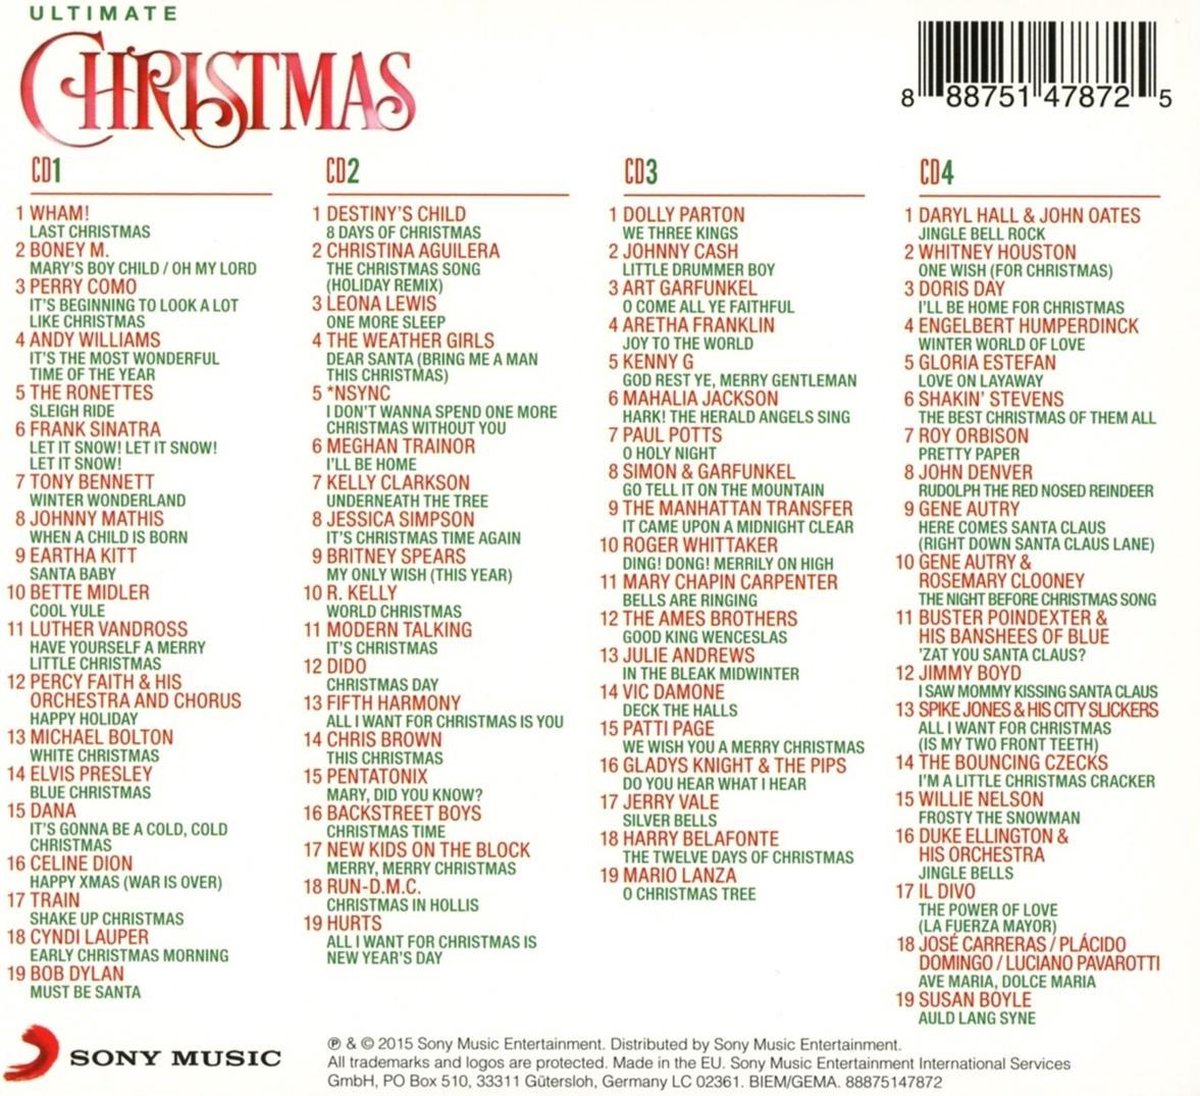 schipper vruchten Publicatie Ultimate Christmas, various artists | CD (album) | Muziek | bol.com